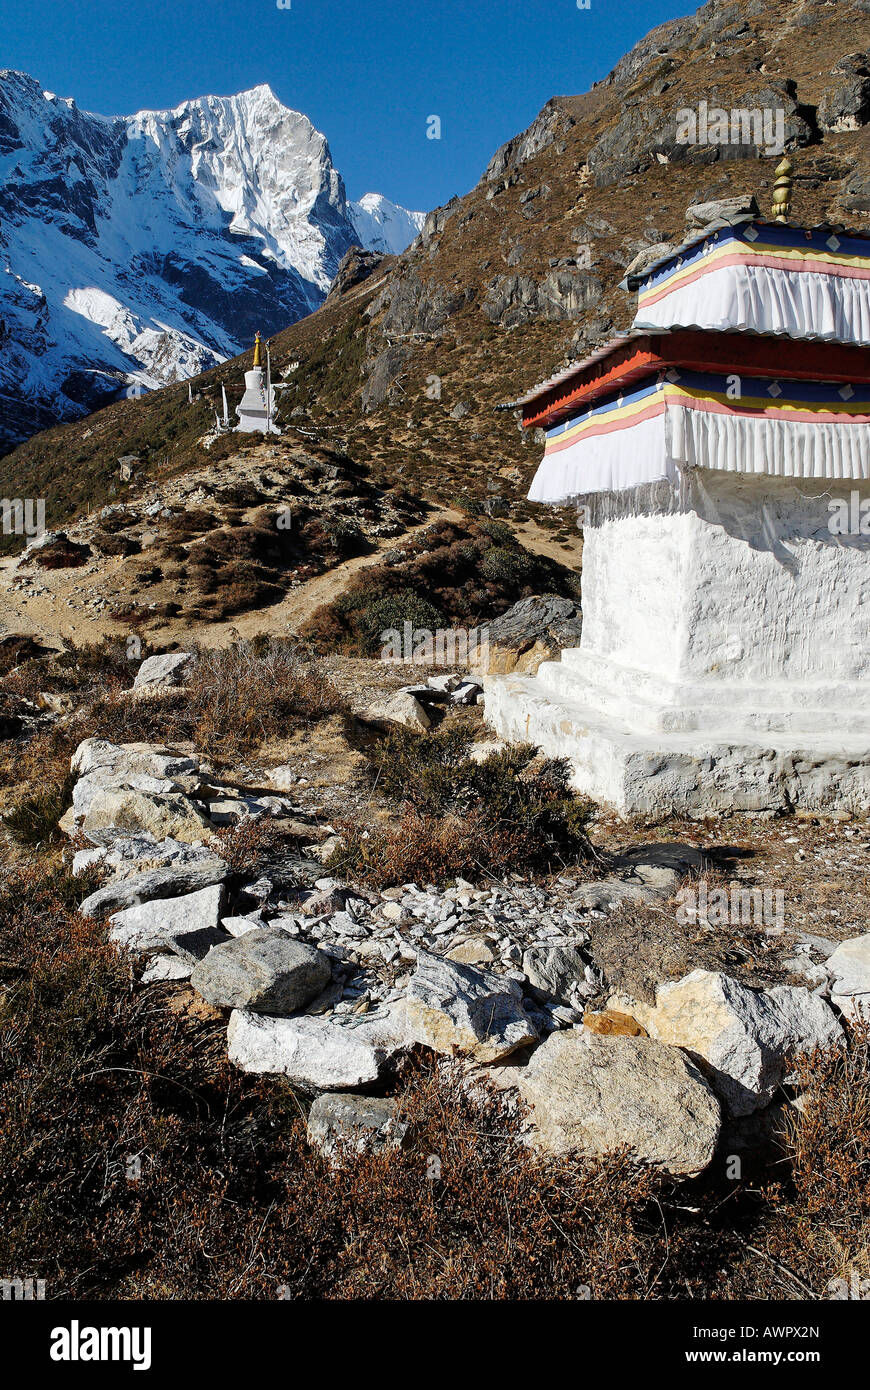 Historic stupa at Thame, Bhote Koshi valley, Khumbu Himal, Sagarmatha National Park, Nepal Stock Photo